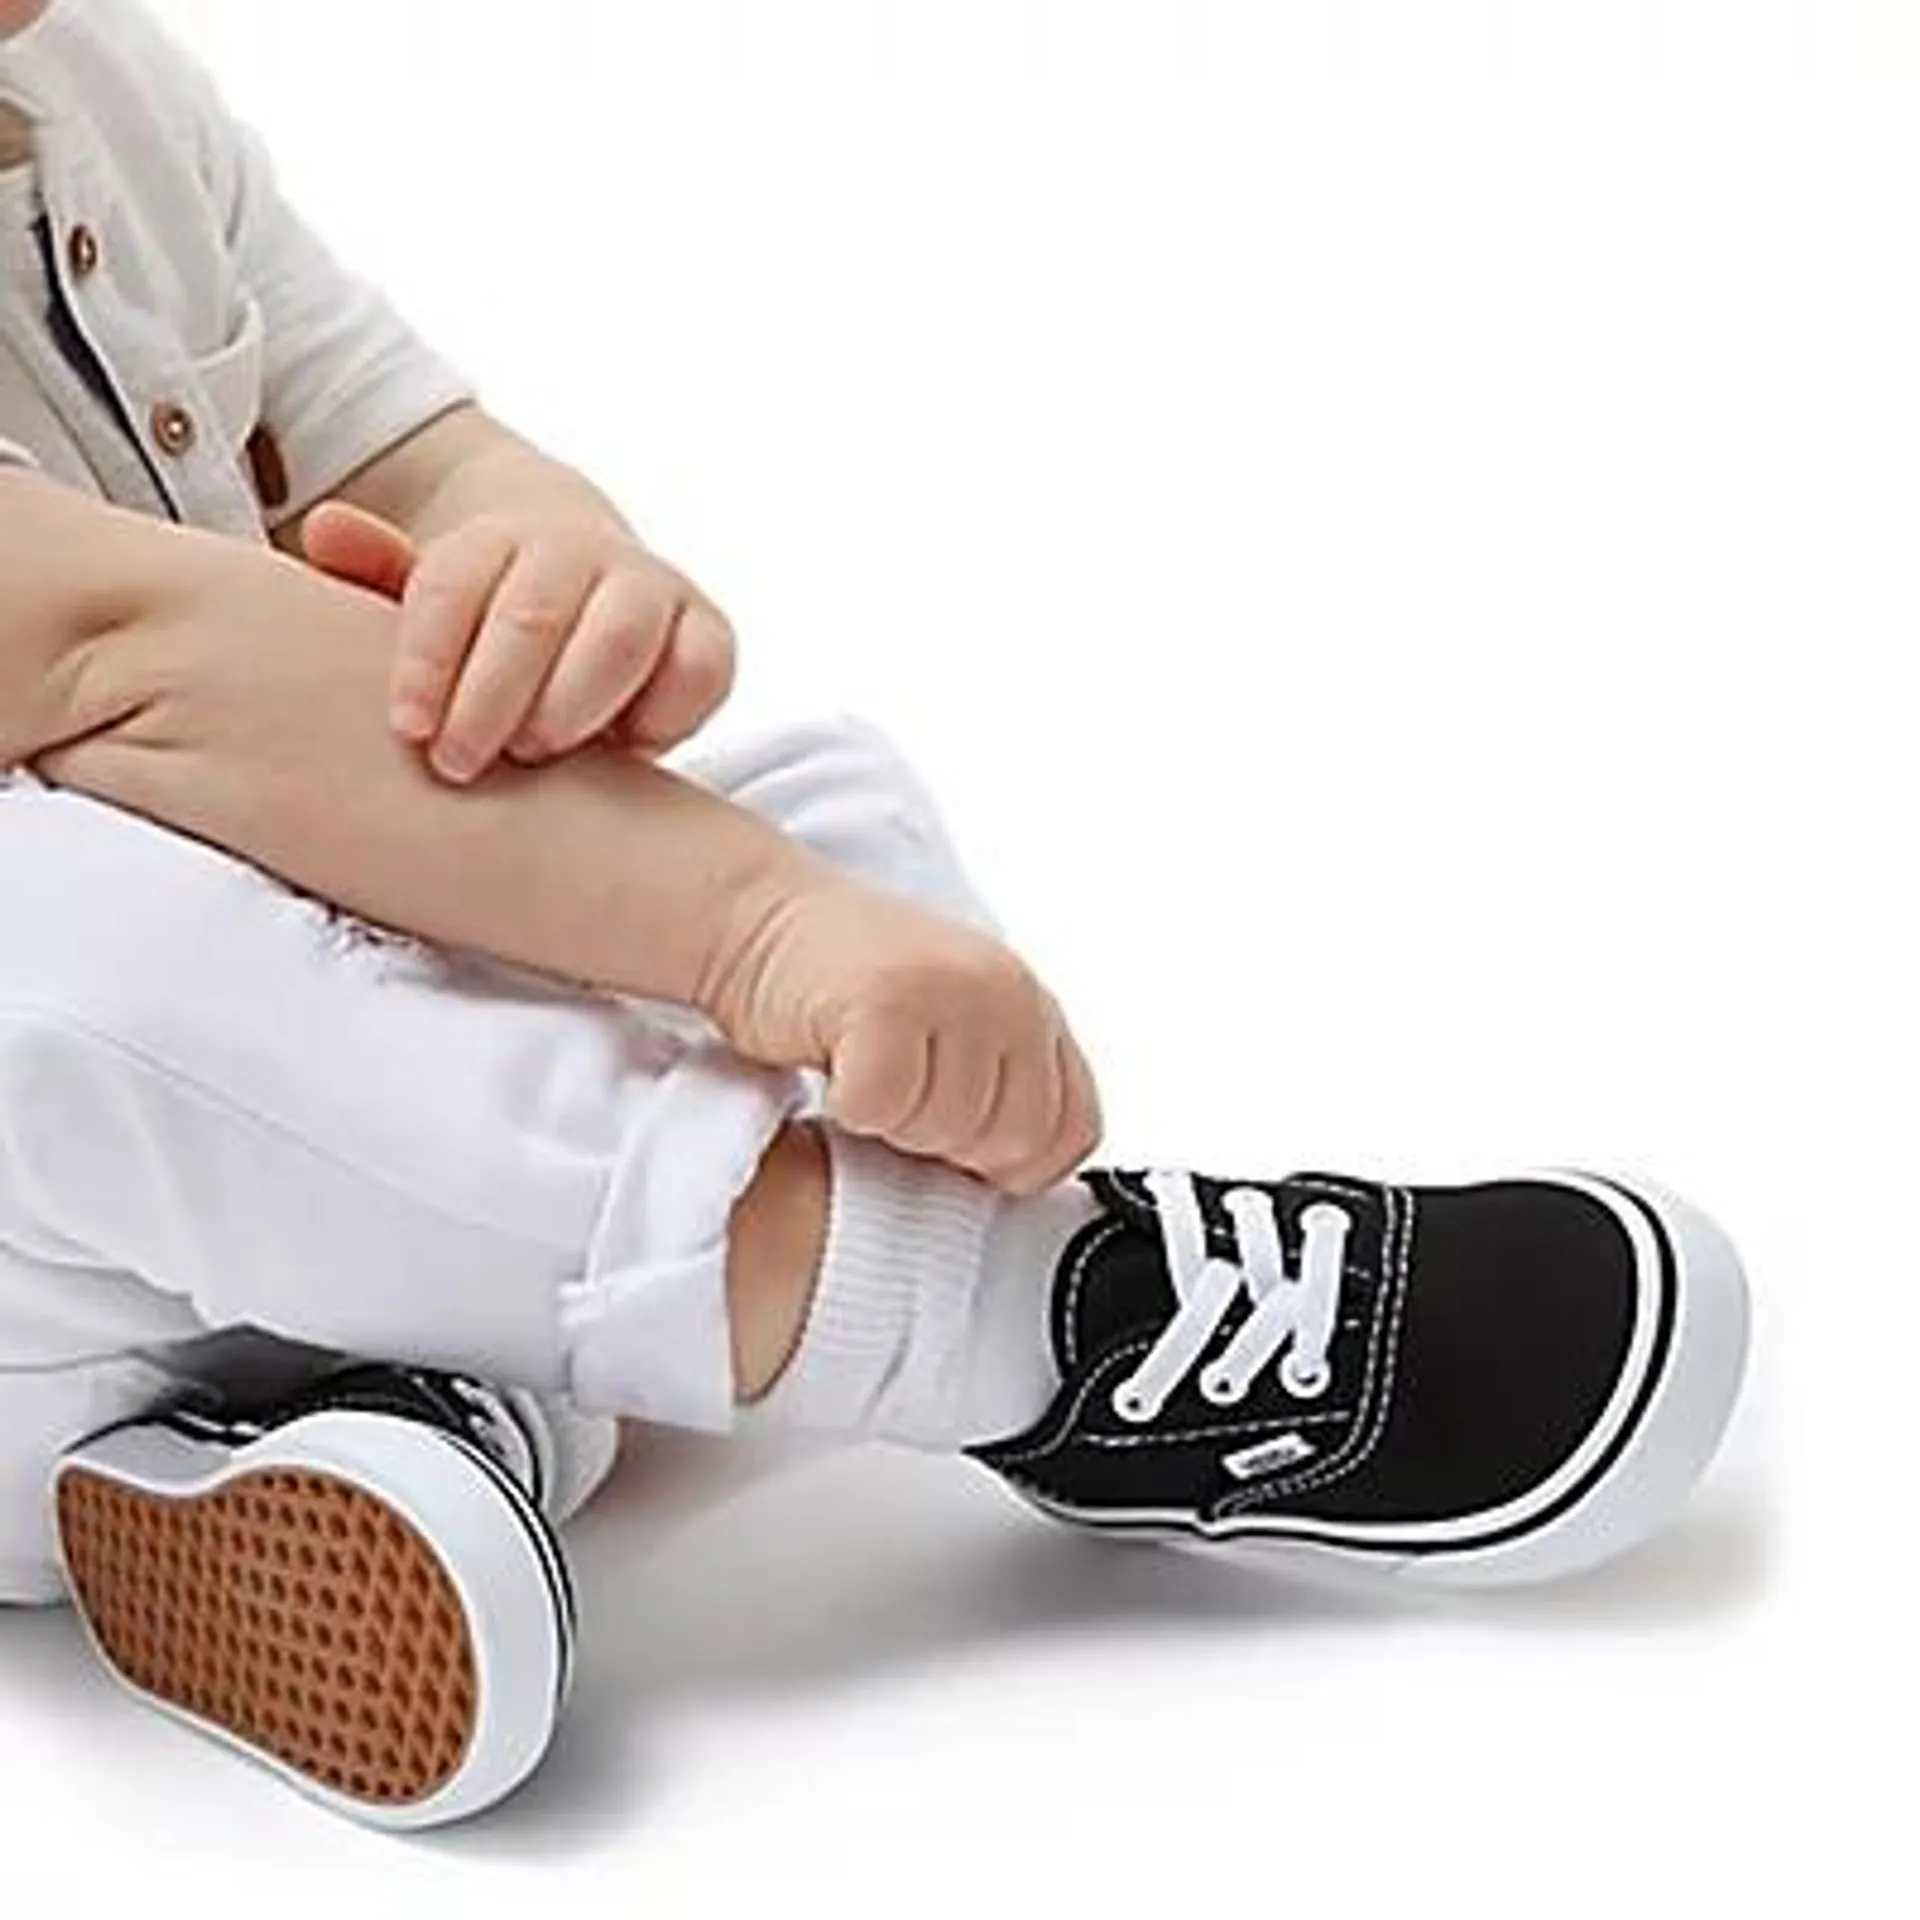 Chaussures Enfant Authentic à lacets élastiques (1-4 ans)